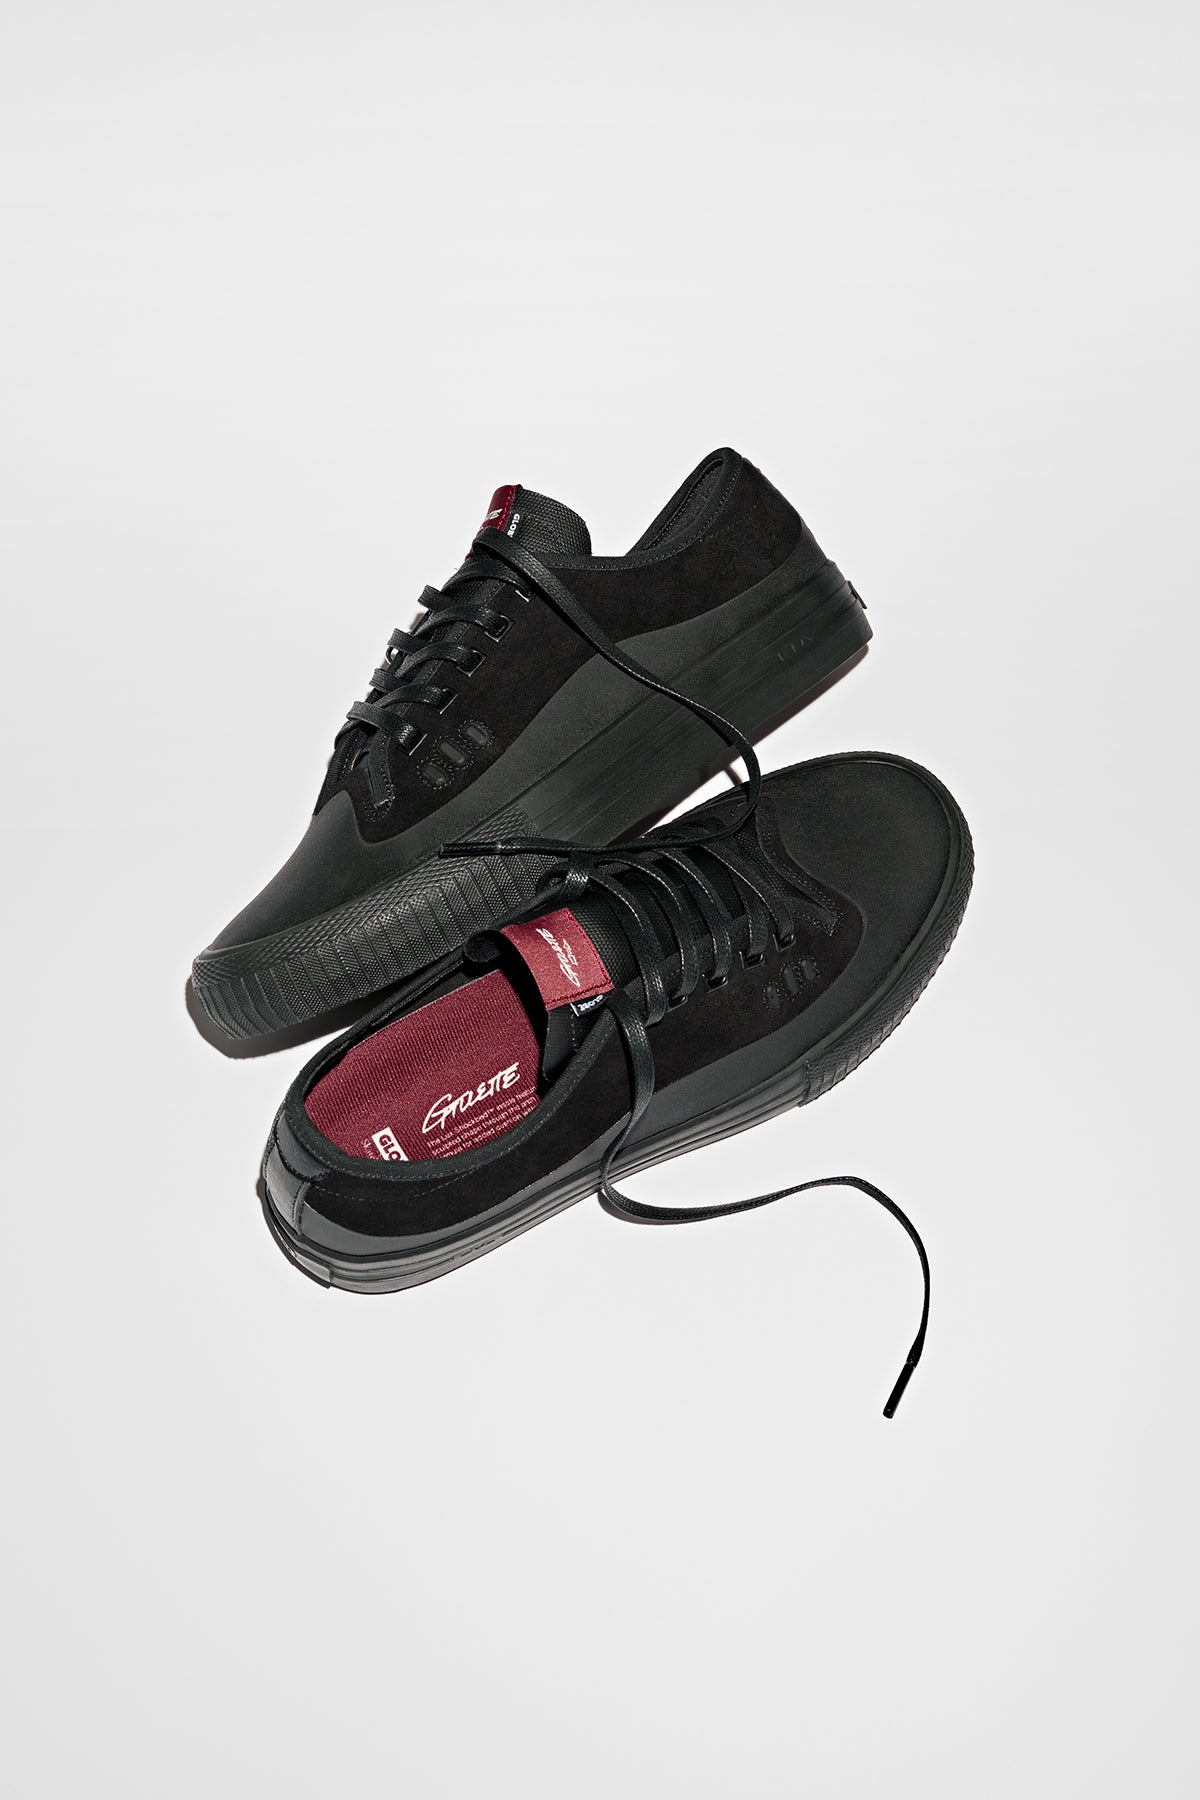 Globe - Gillette - Black/Black Wildleder - skateboard Schuhe